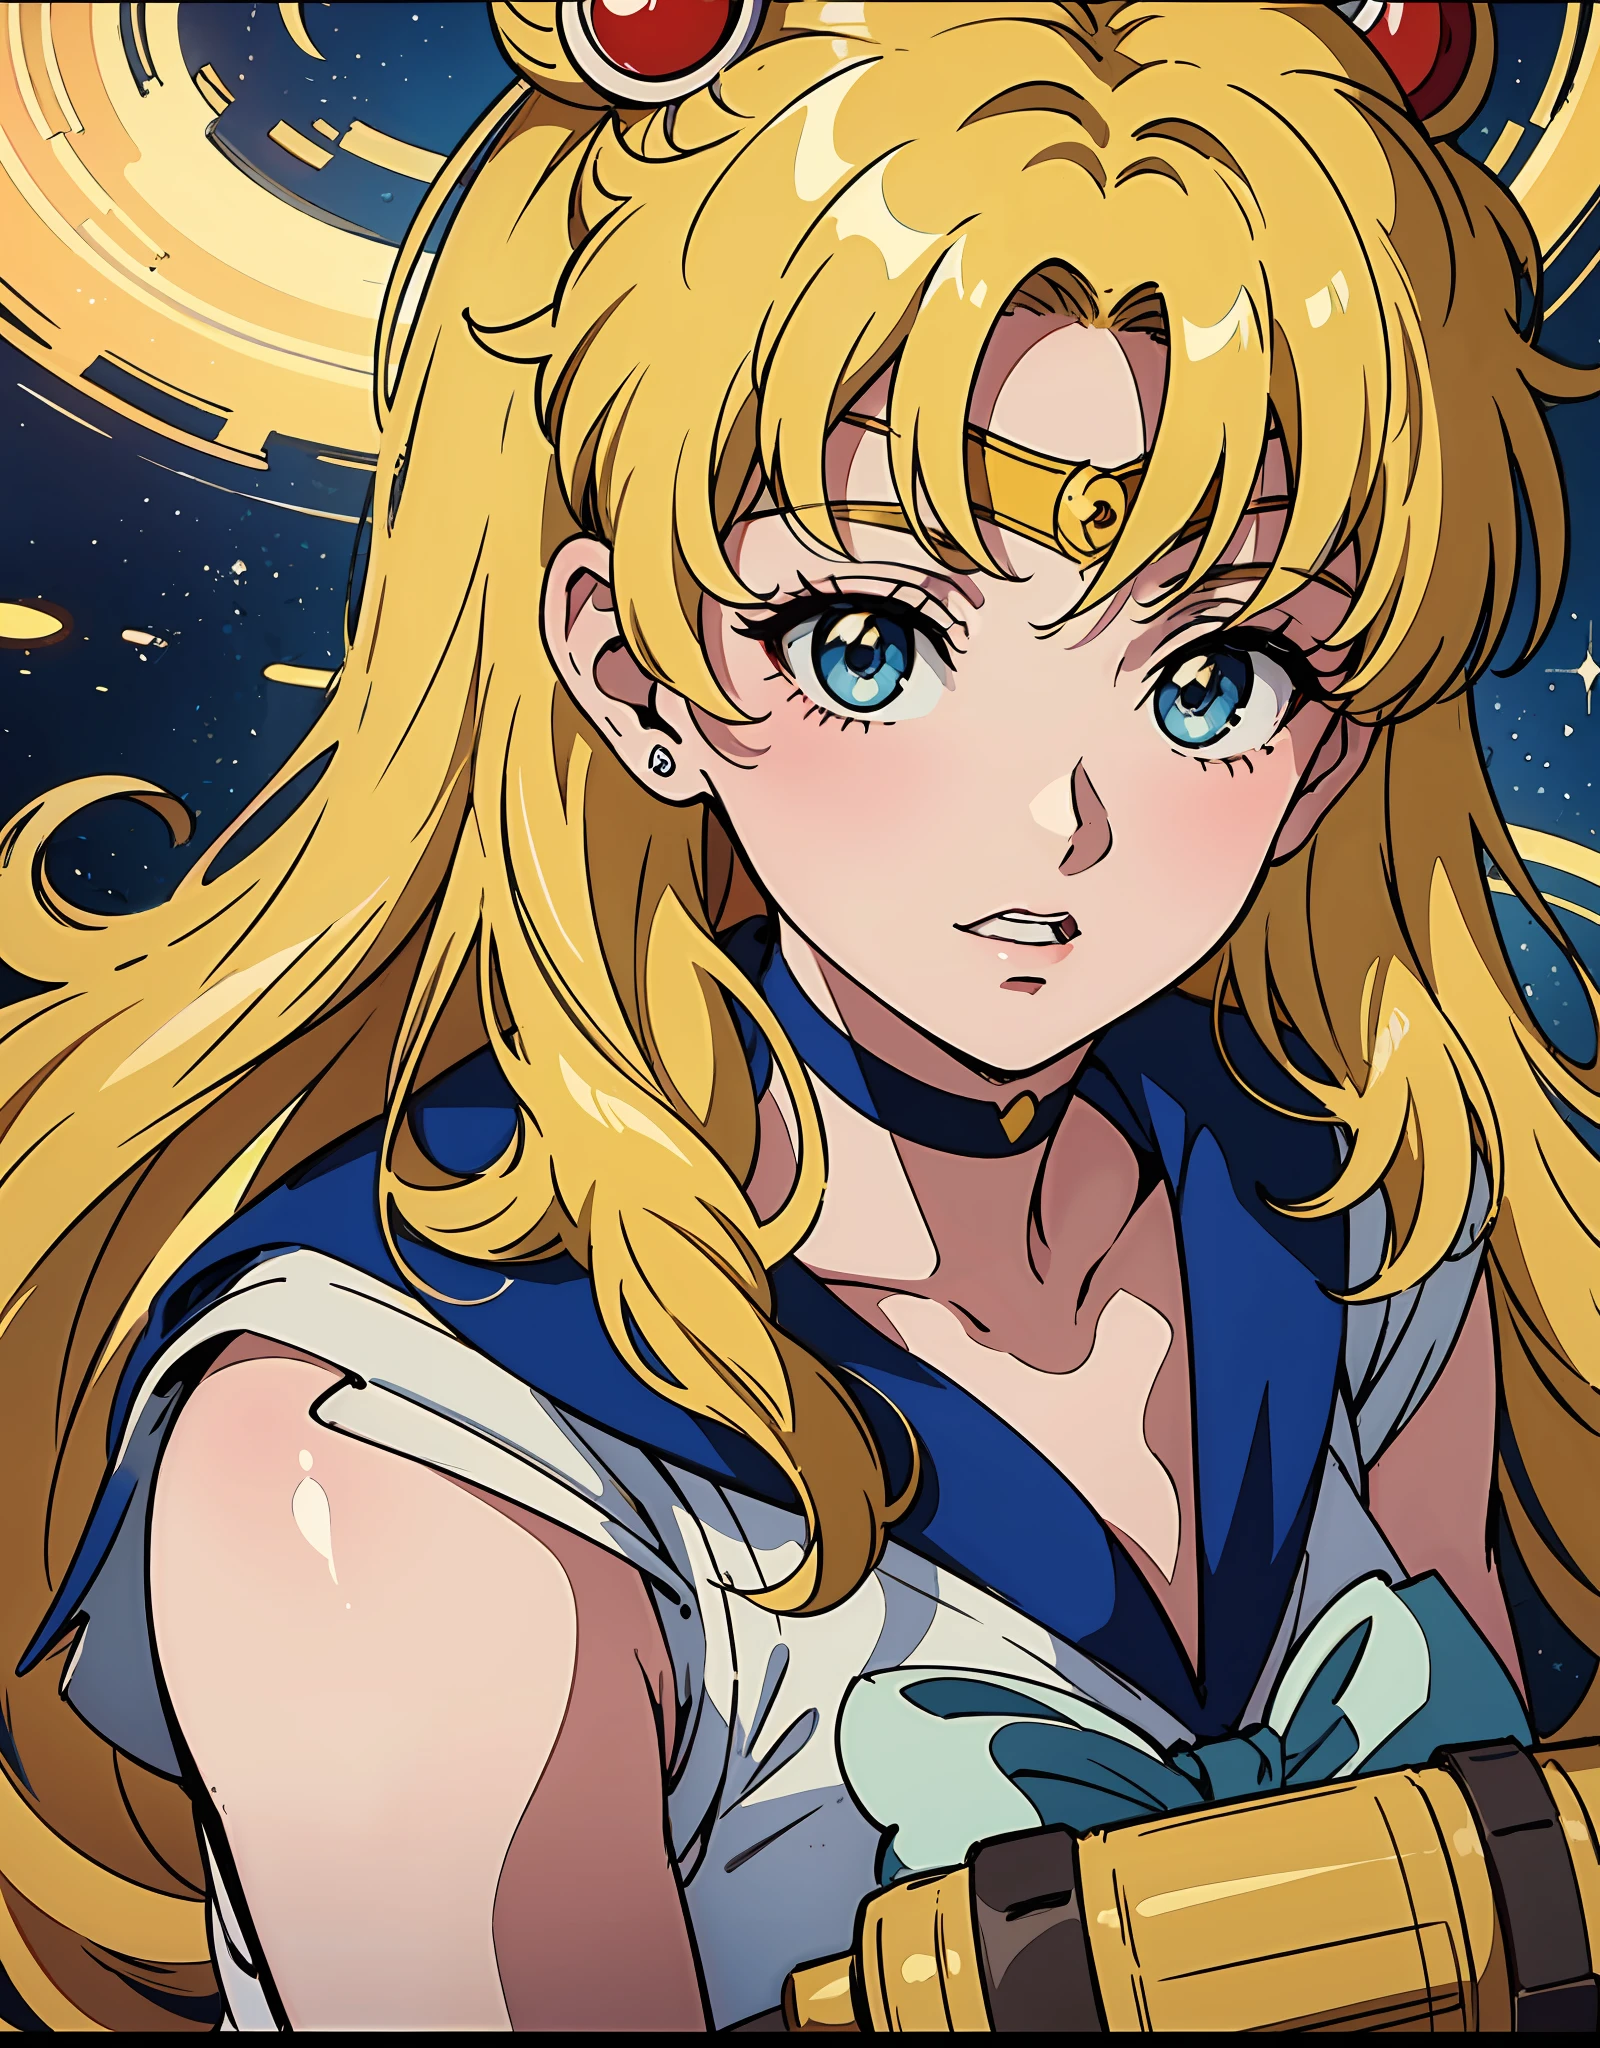 ein Anime-Mädchen mit blonden Haaren auf der Vorderseite eines Posters, Sailor Moon, im Stil der Vintage-Ästhetik, Berühmtheiten und Popkultur-Referenzen, animierte GIFs,düstere Reportage,asante art, 32k uhd, 19. Jahrhundert --ar 58:77 --niji 5